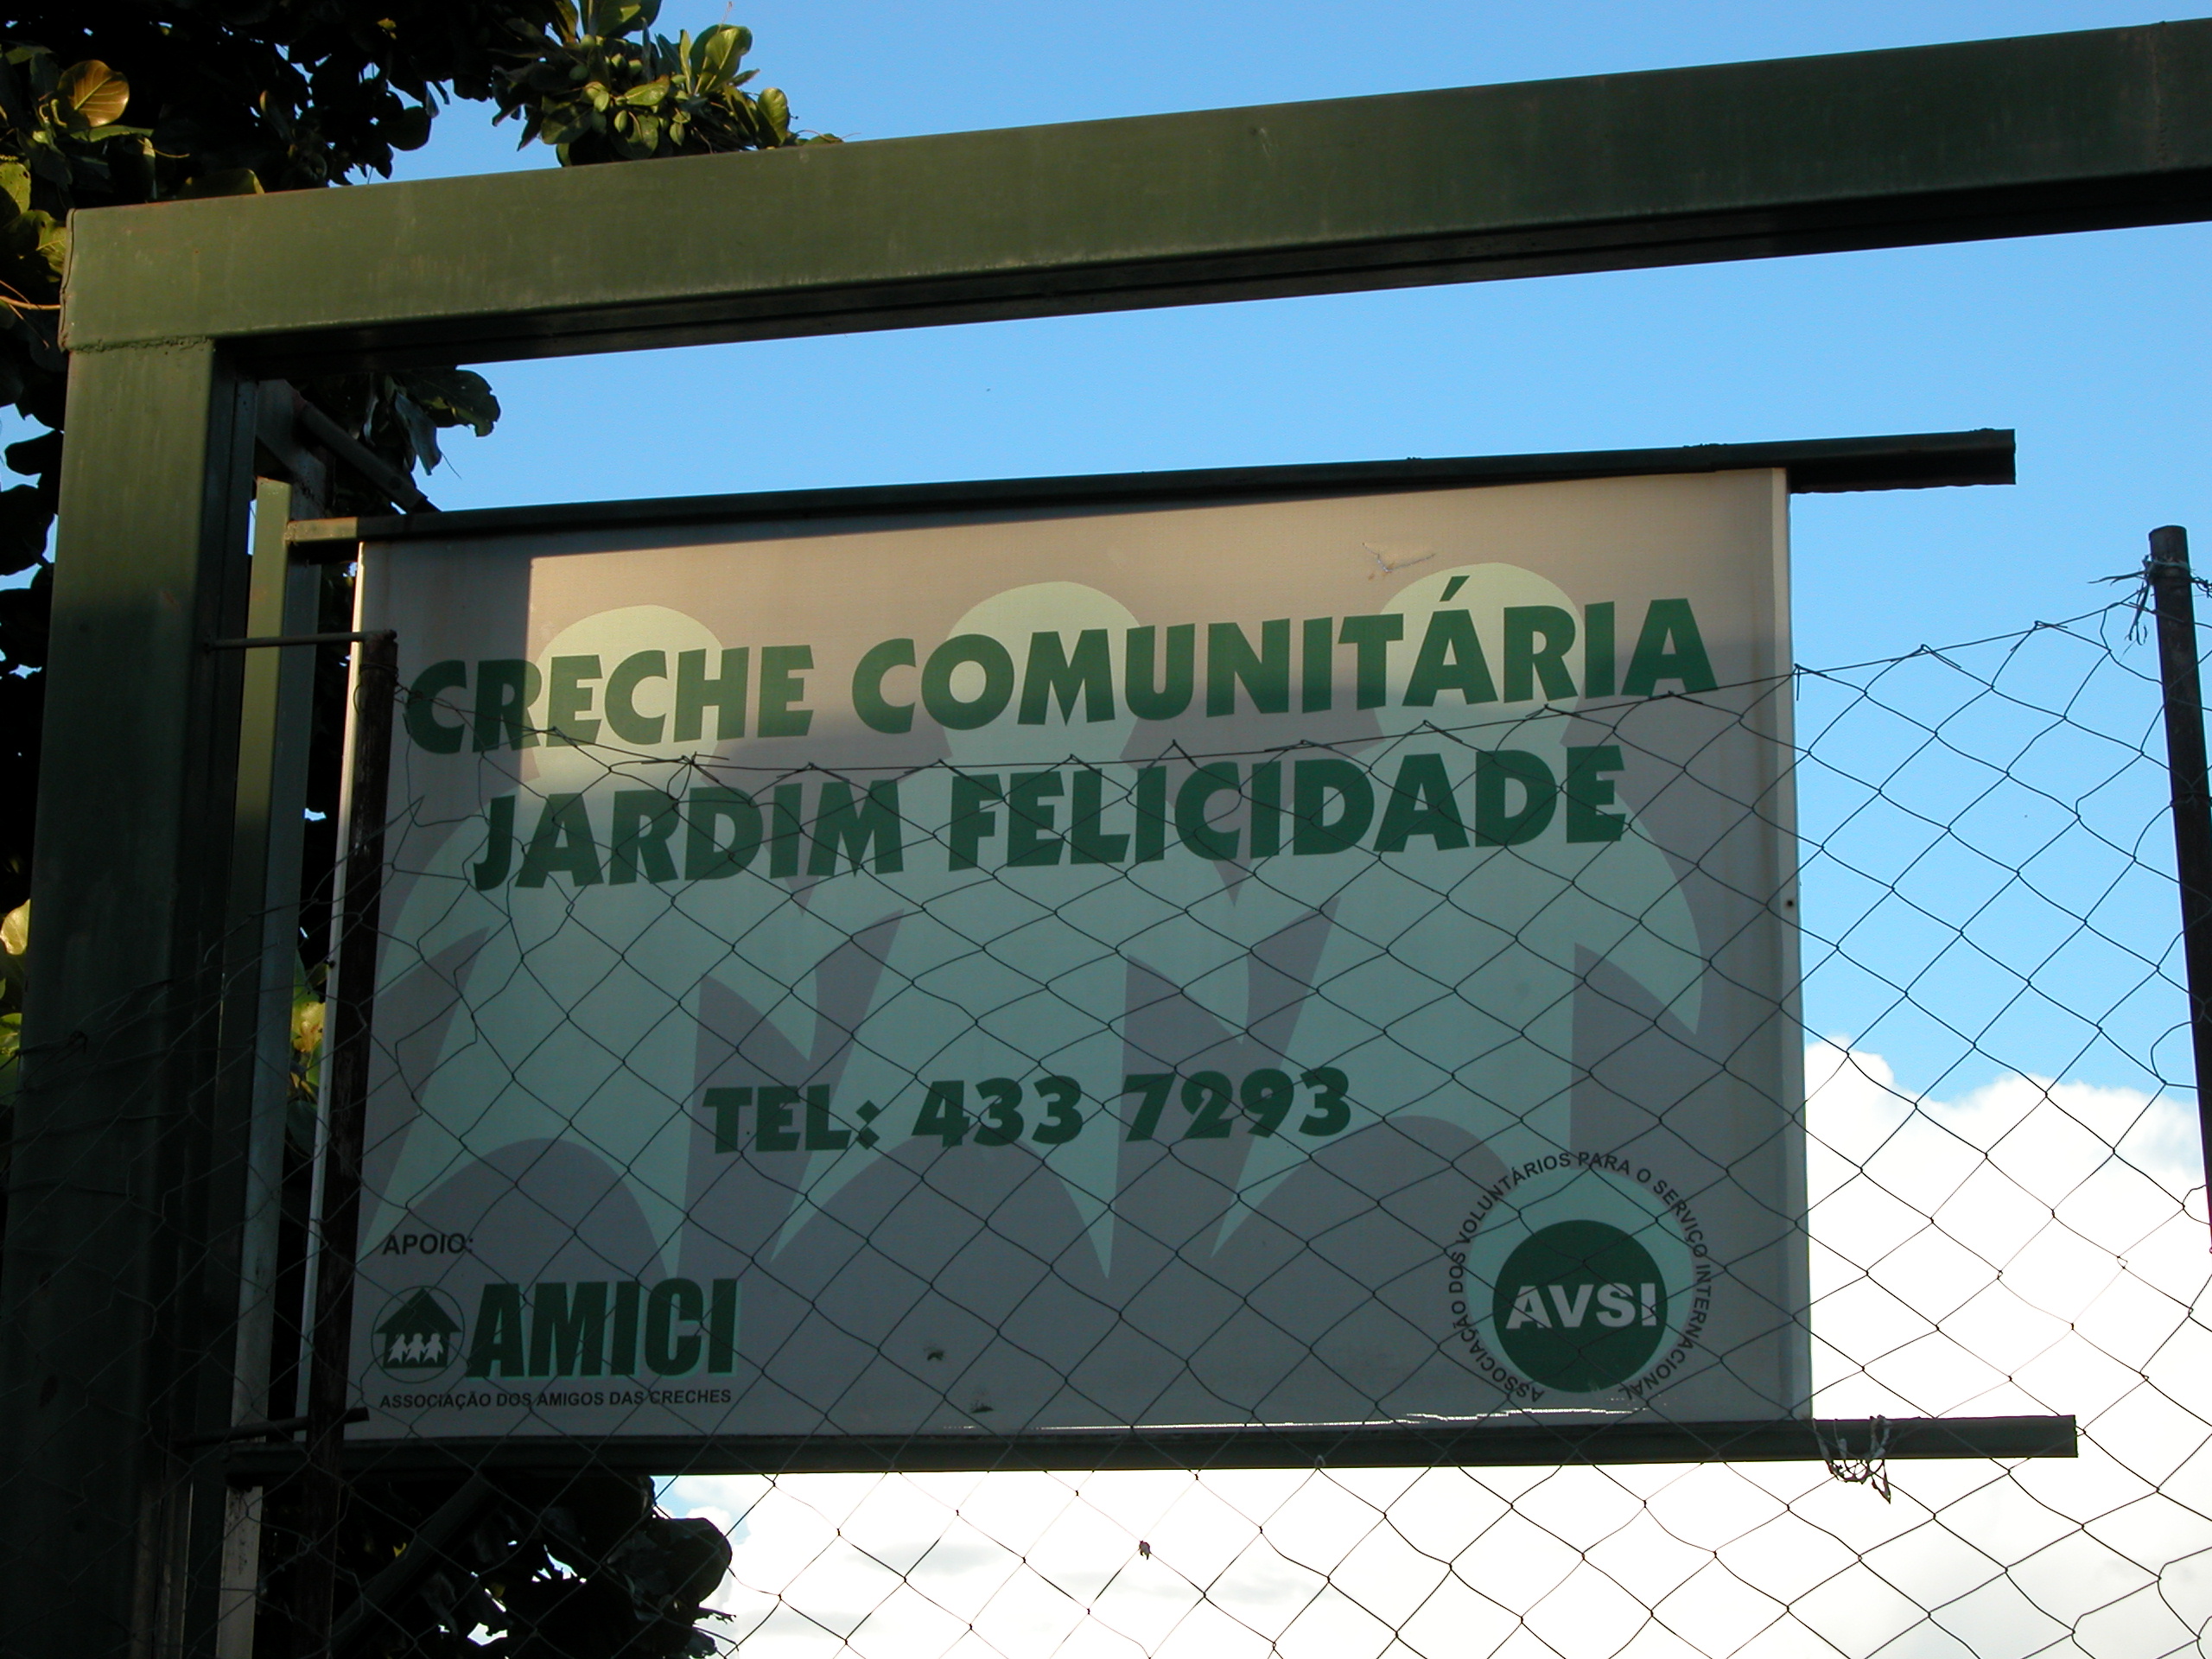 Alfonso Ceresani, "Jardim Felicidade" (Brasile, 2004) - Alfonso Ceresani, "Jardim Felicidade" (Brasile, 2004)